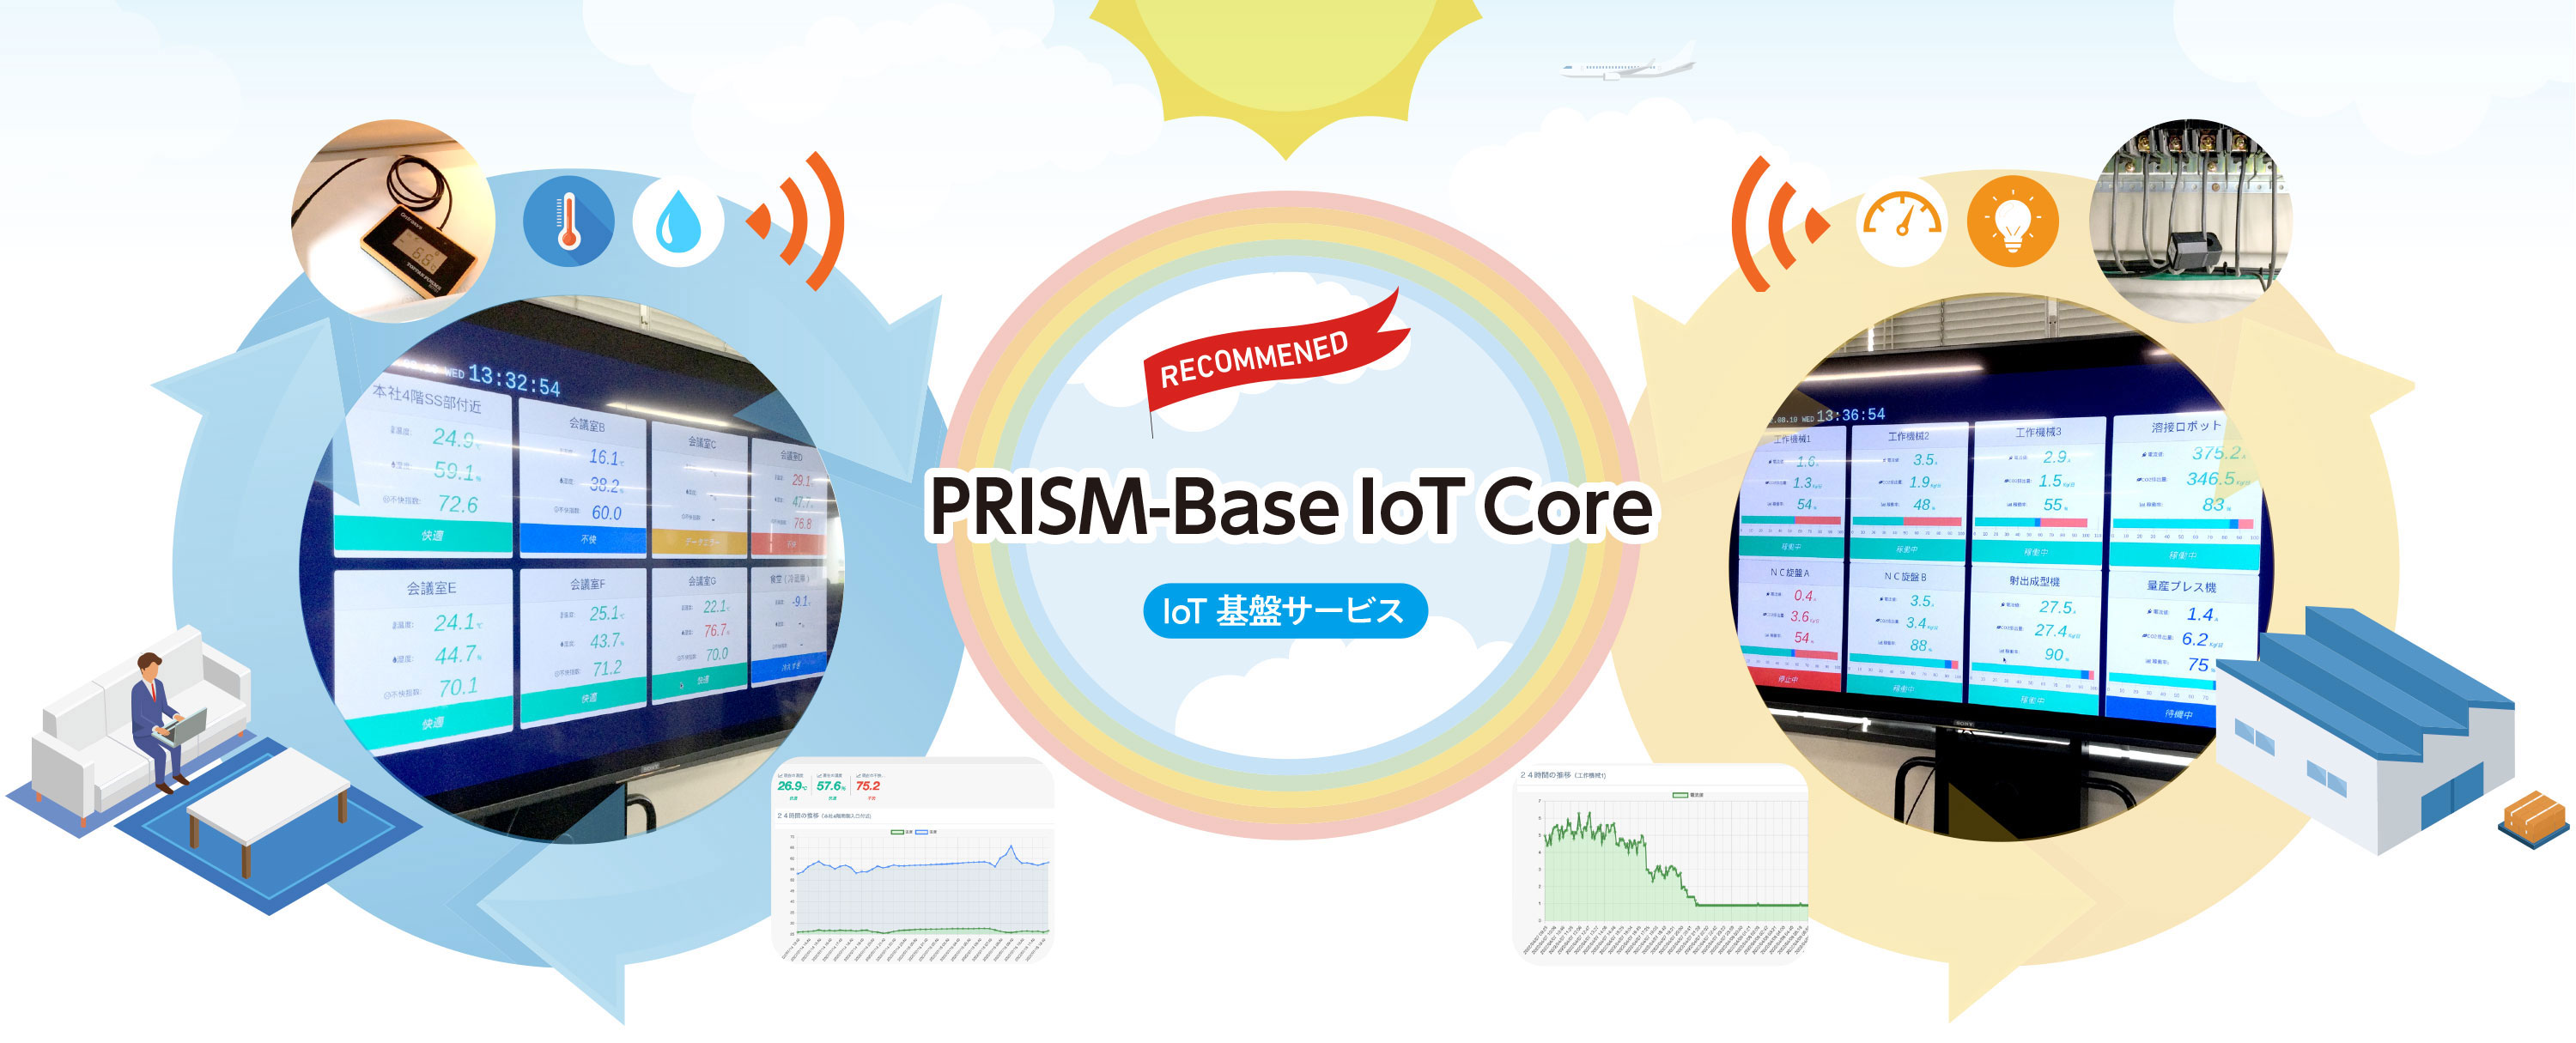 PRISM-Base IoT Core